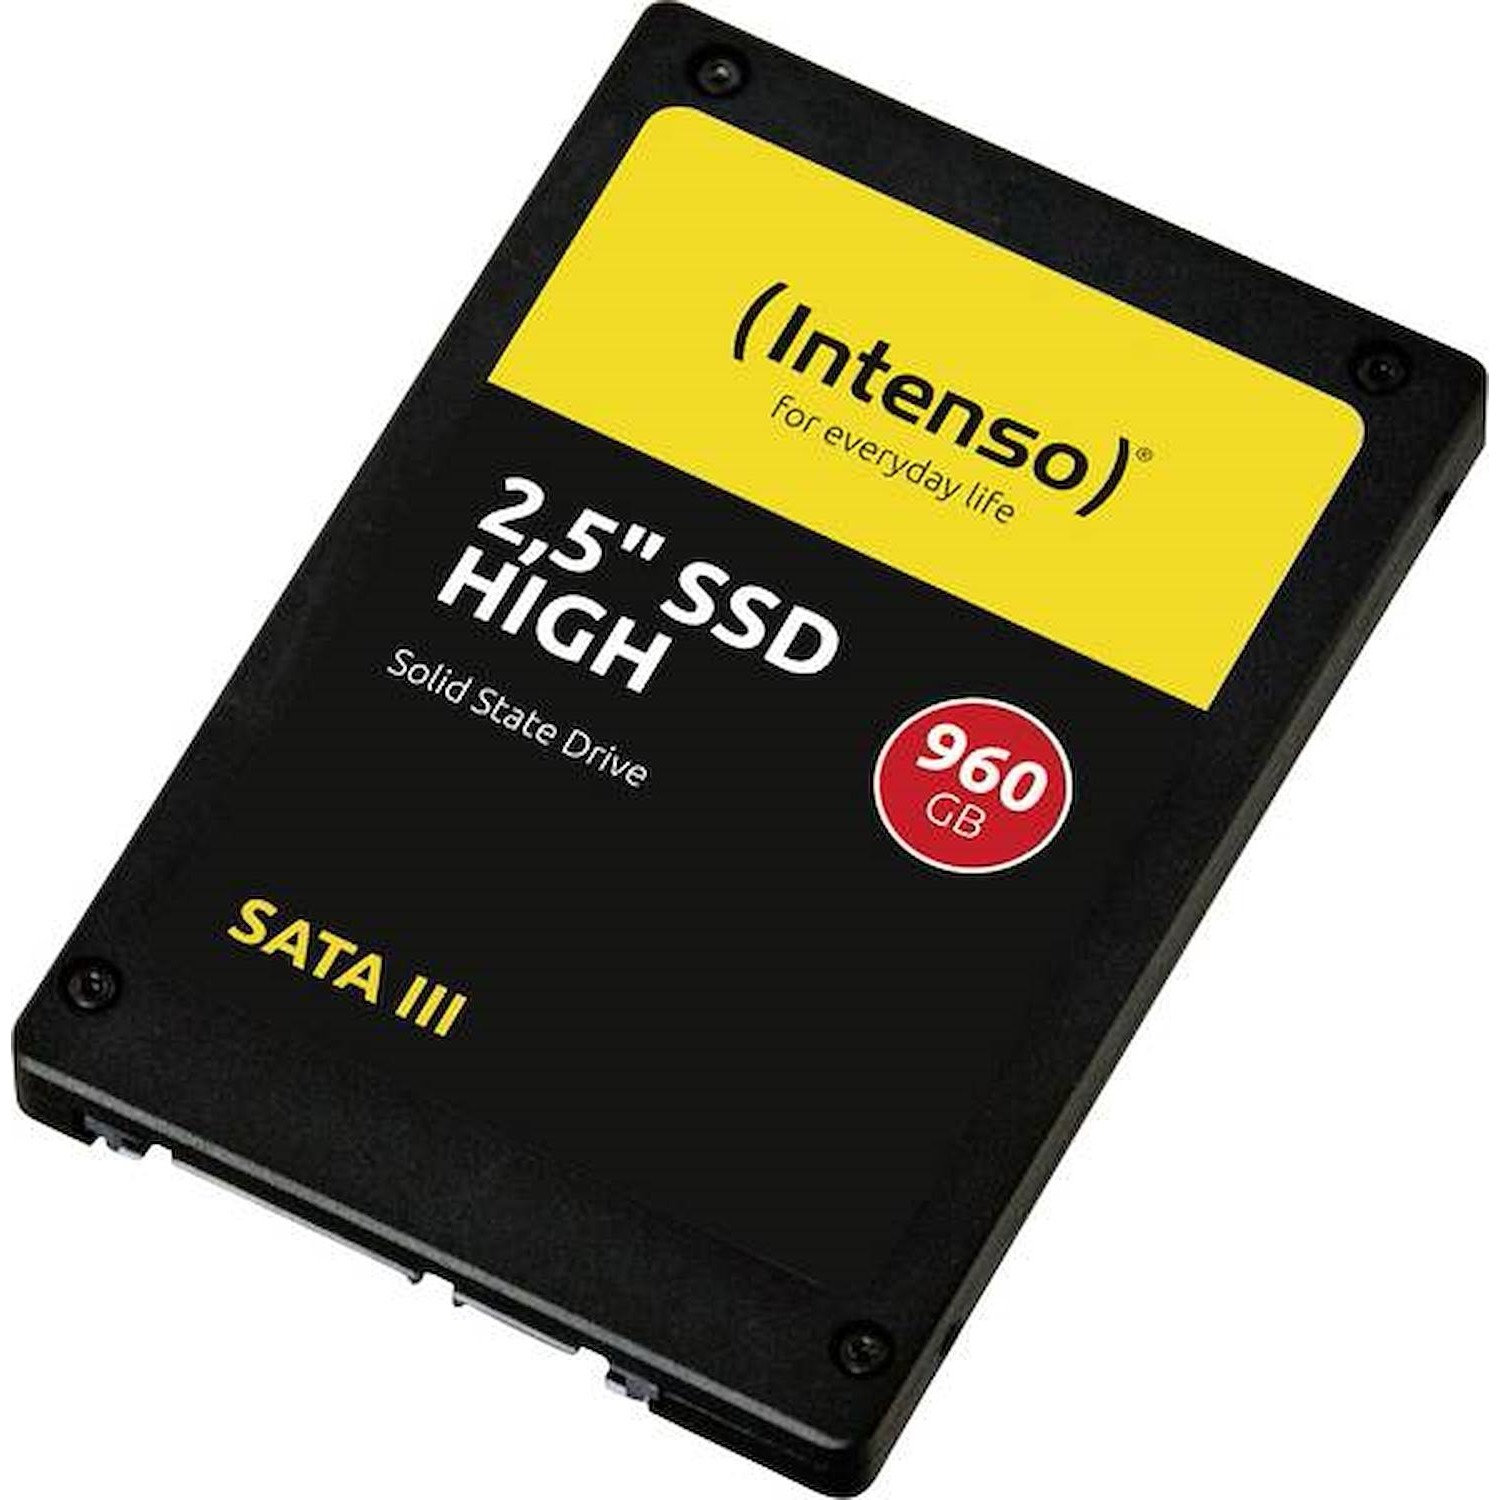 Immagine per HD SSD Intenso High Performance 960GB da DIMOStore